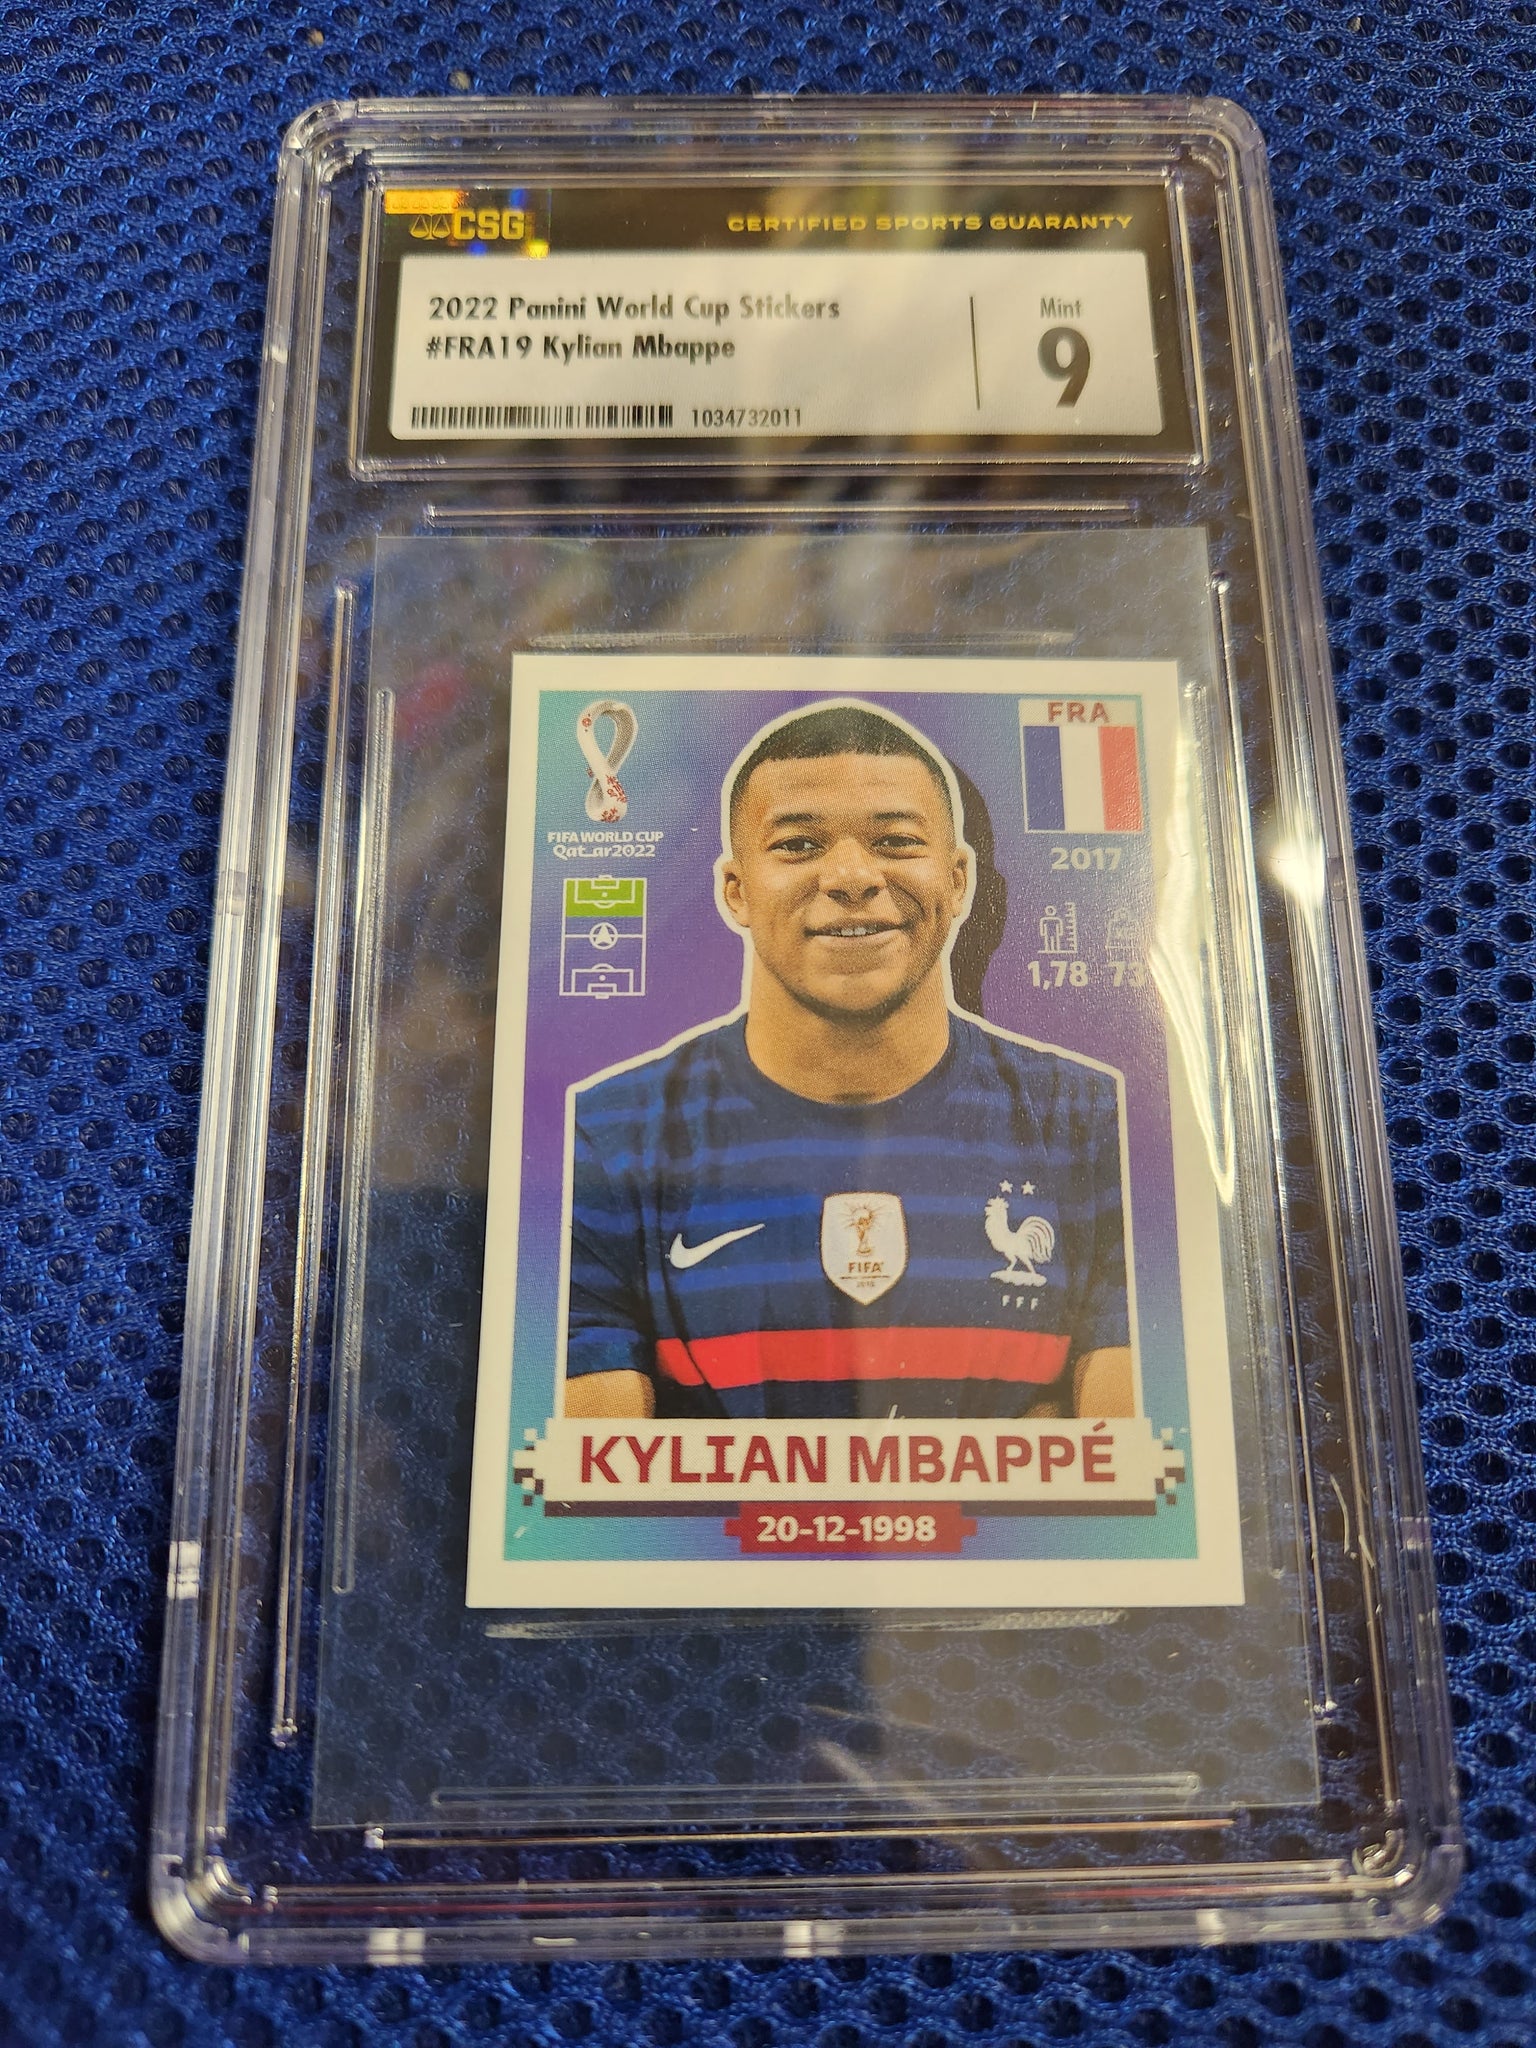 FRA19 - França - Kylian Mbappé